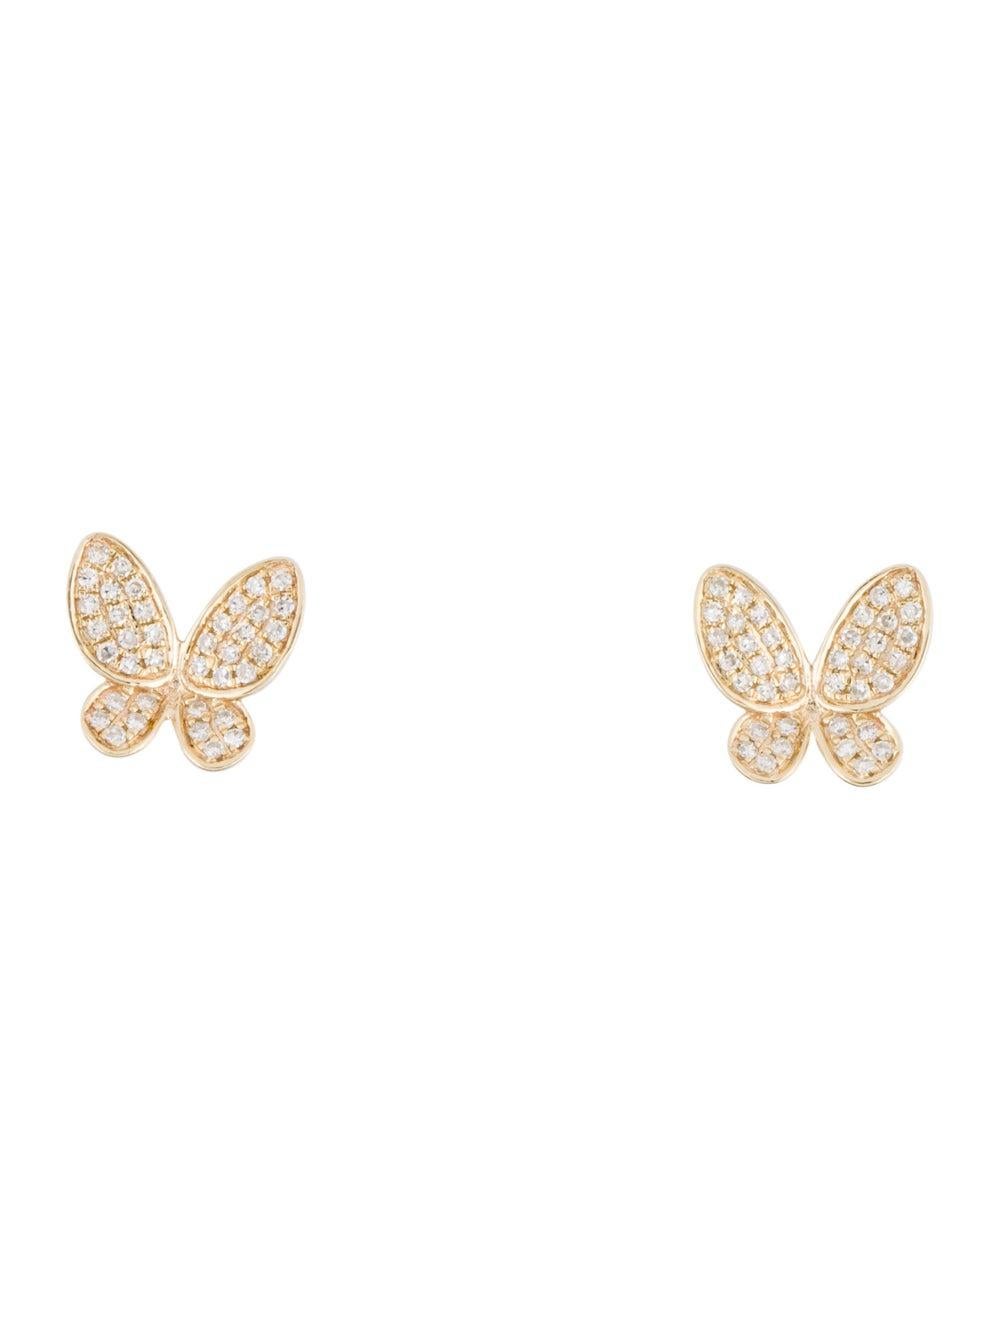 14K Yellow Gold 0.20 Carat Diamond Butterfly Earrings For Sale 2